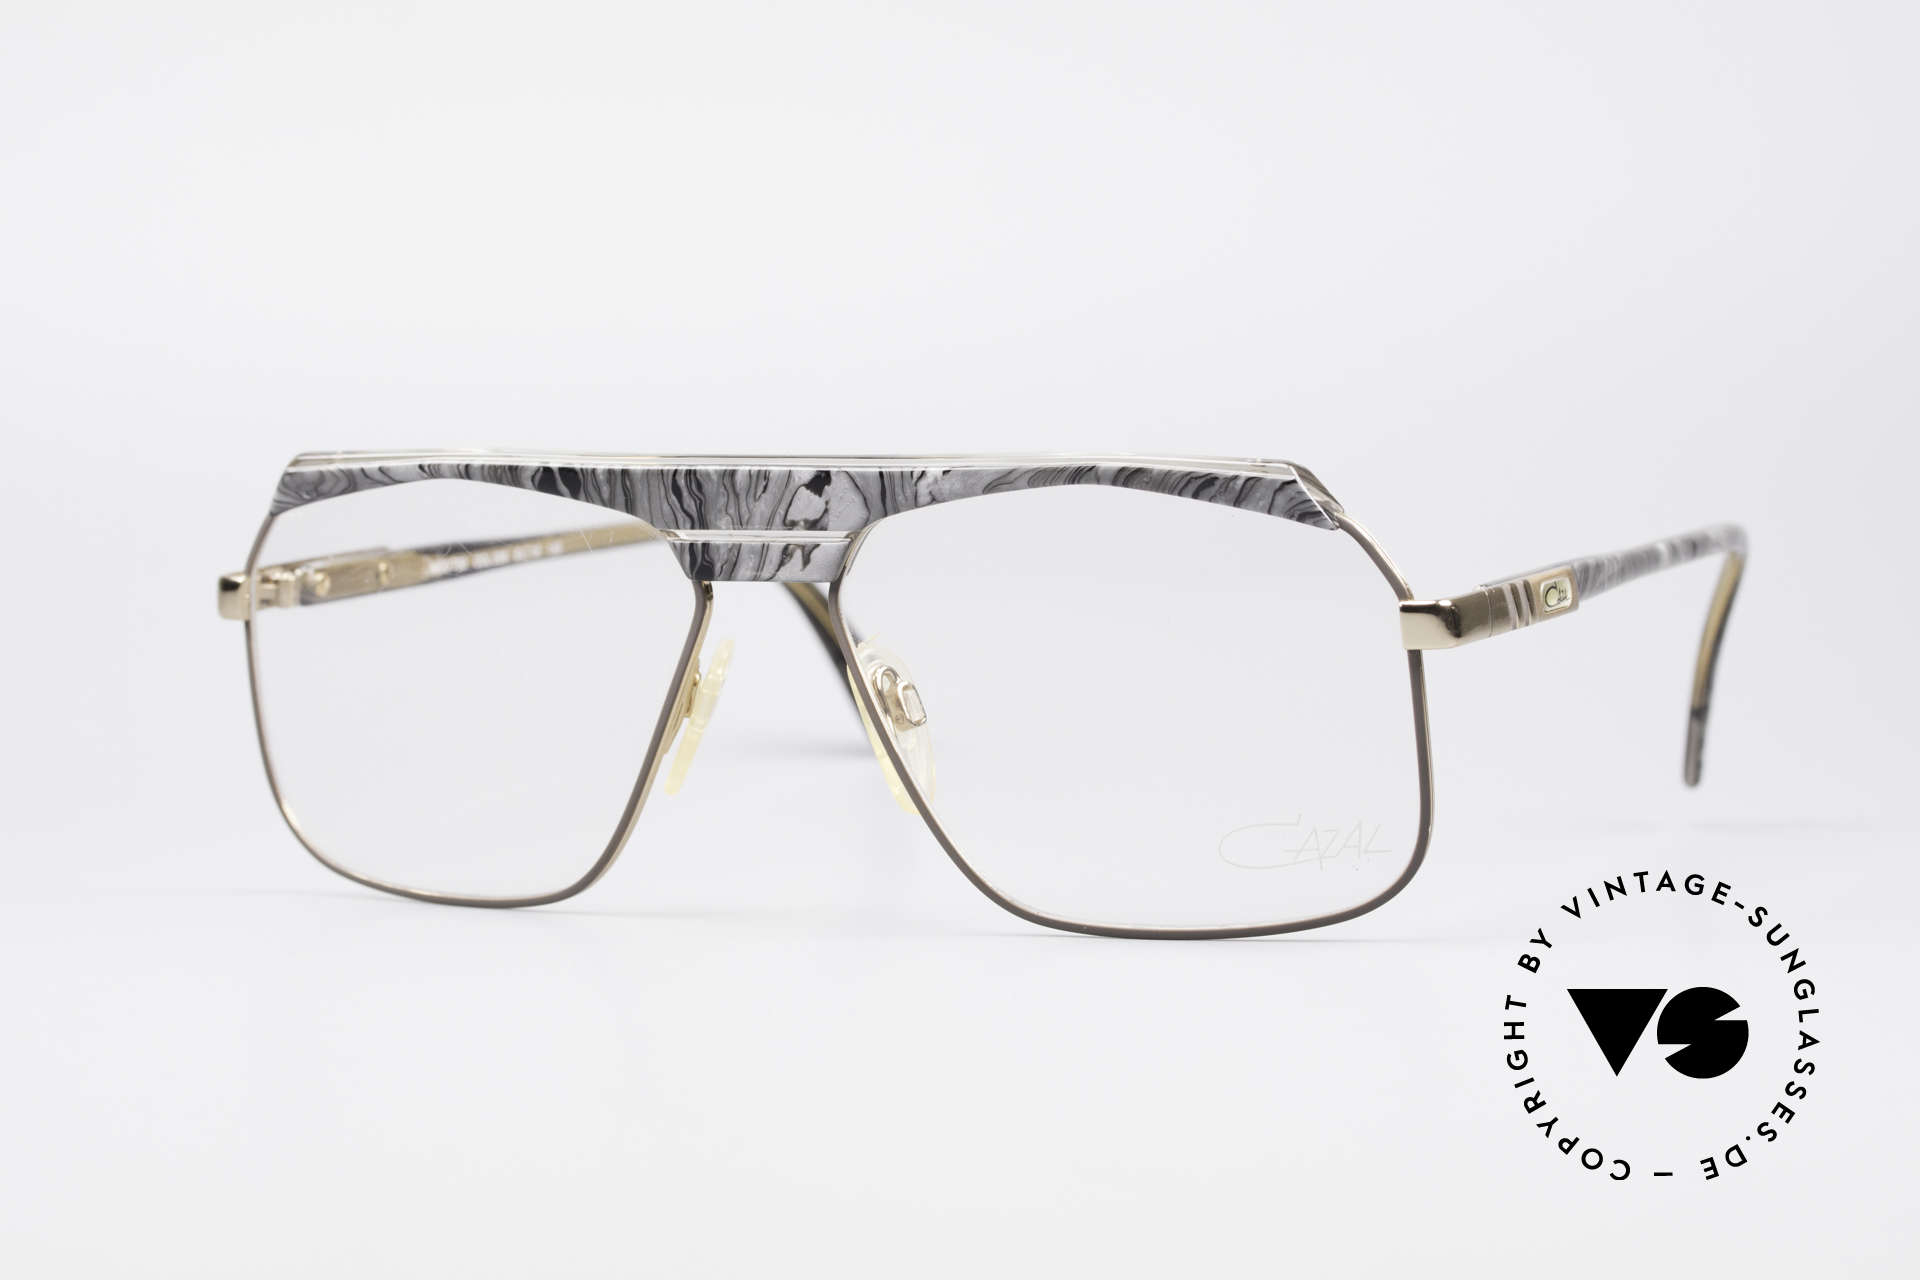 Cazal 730 80er West Germany Brille, klassische vintage Designerbrille der 1980er Jahre, Passend für Herren